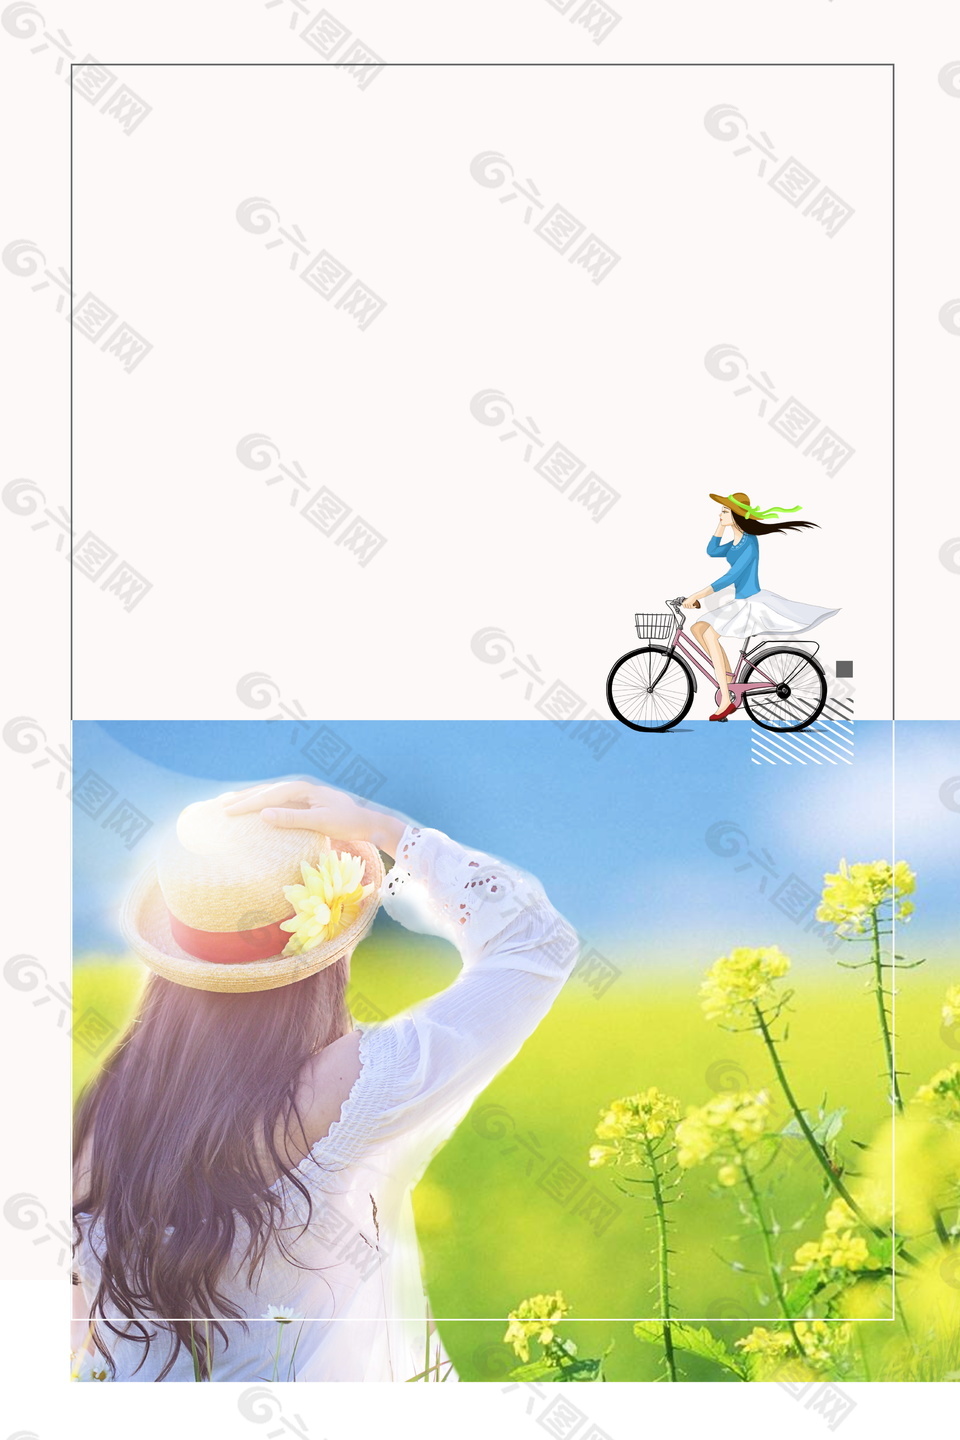 骑行赏油菜花之旅夏季促销广告背景素材